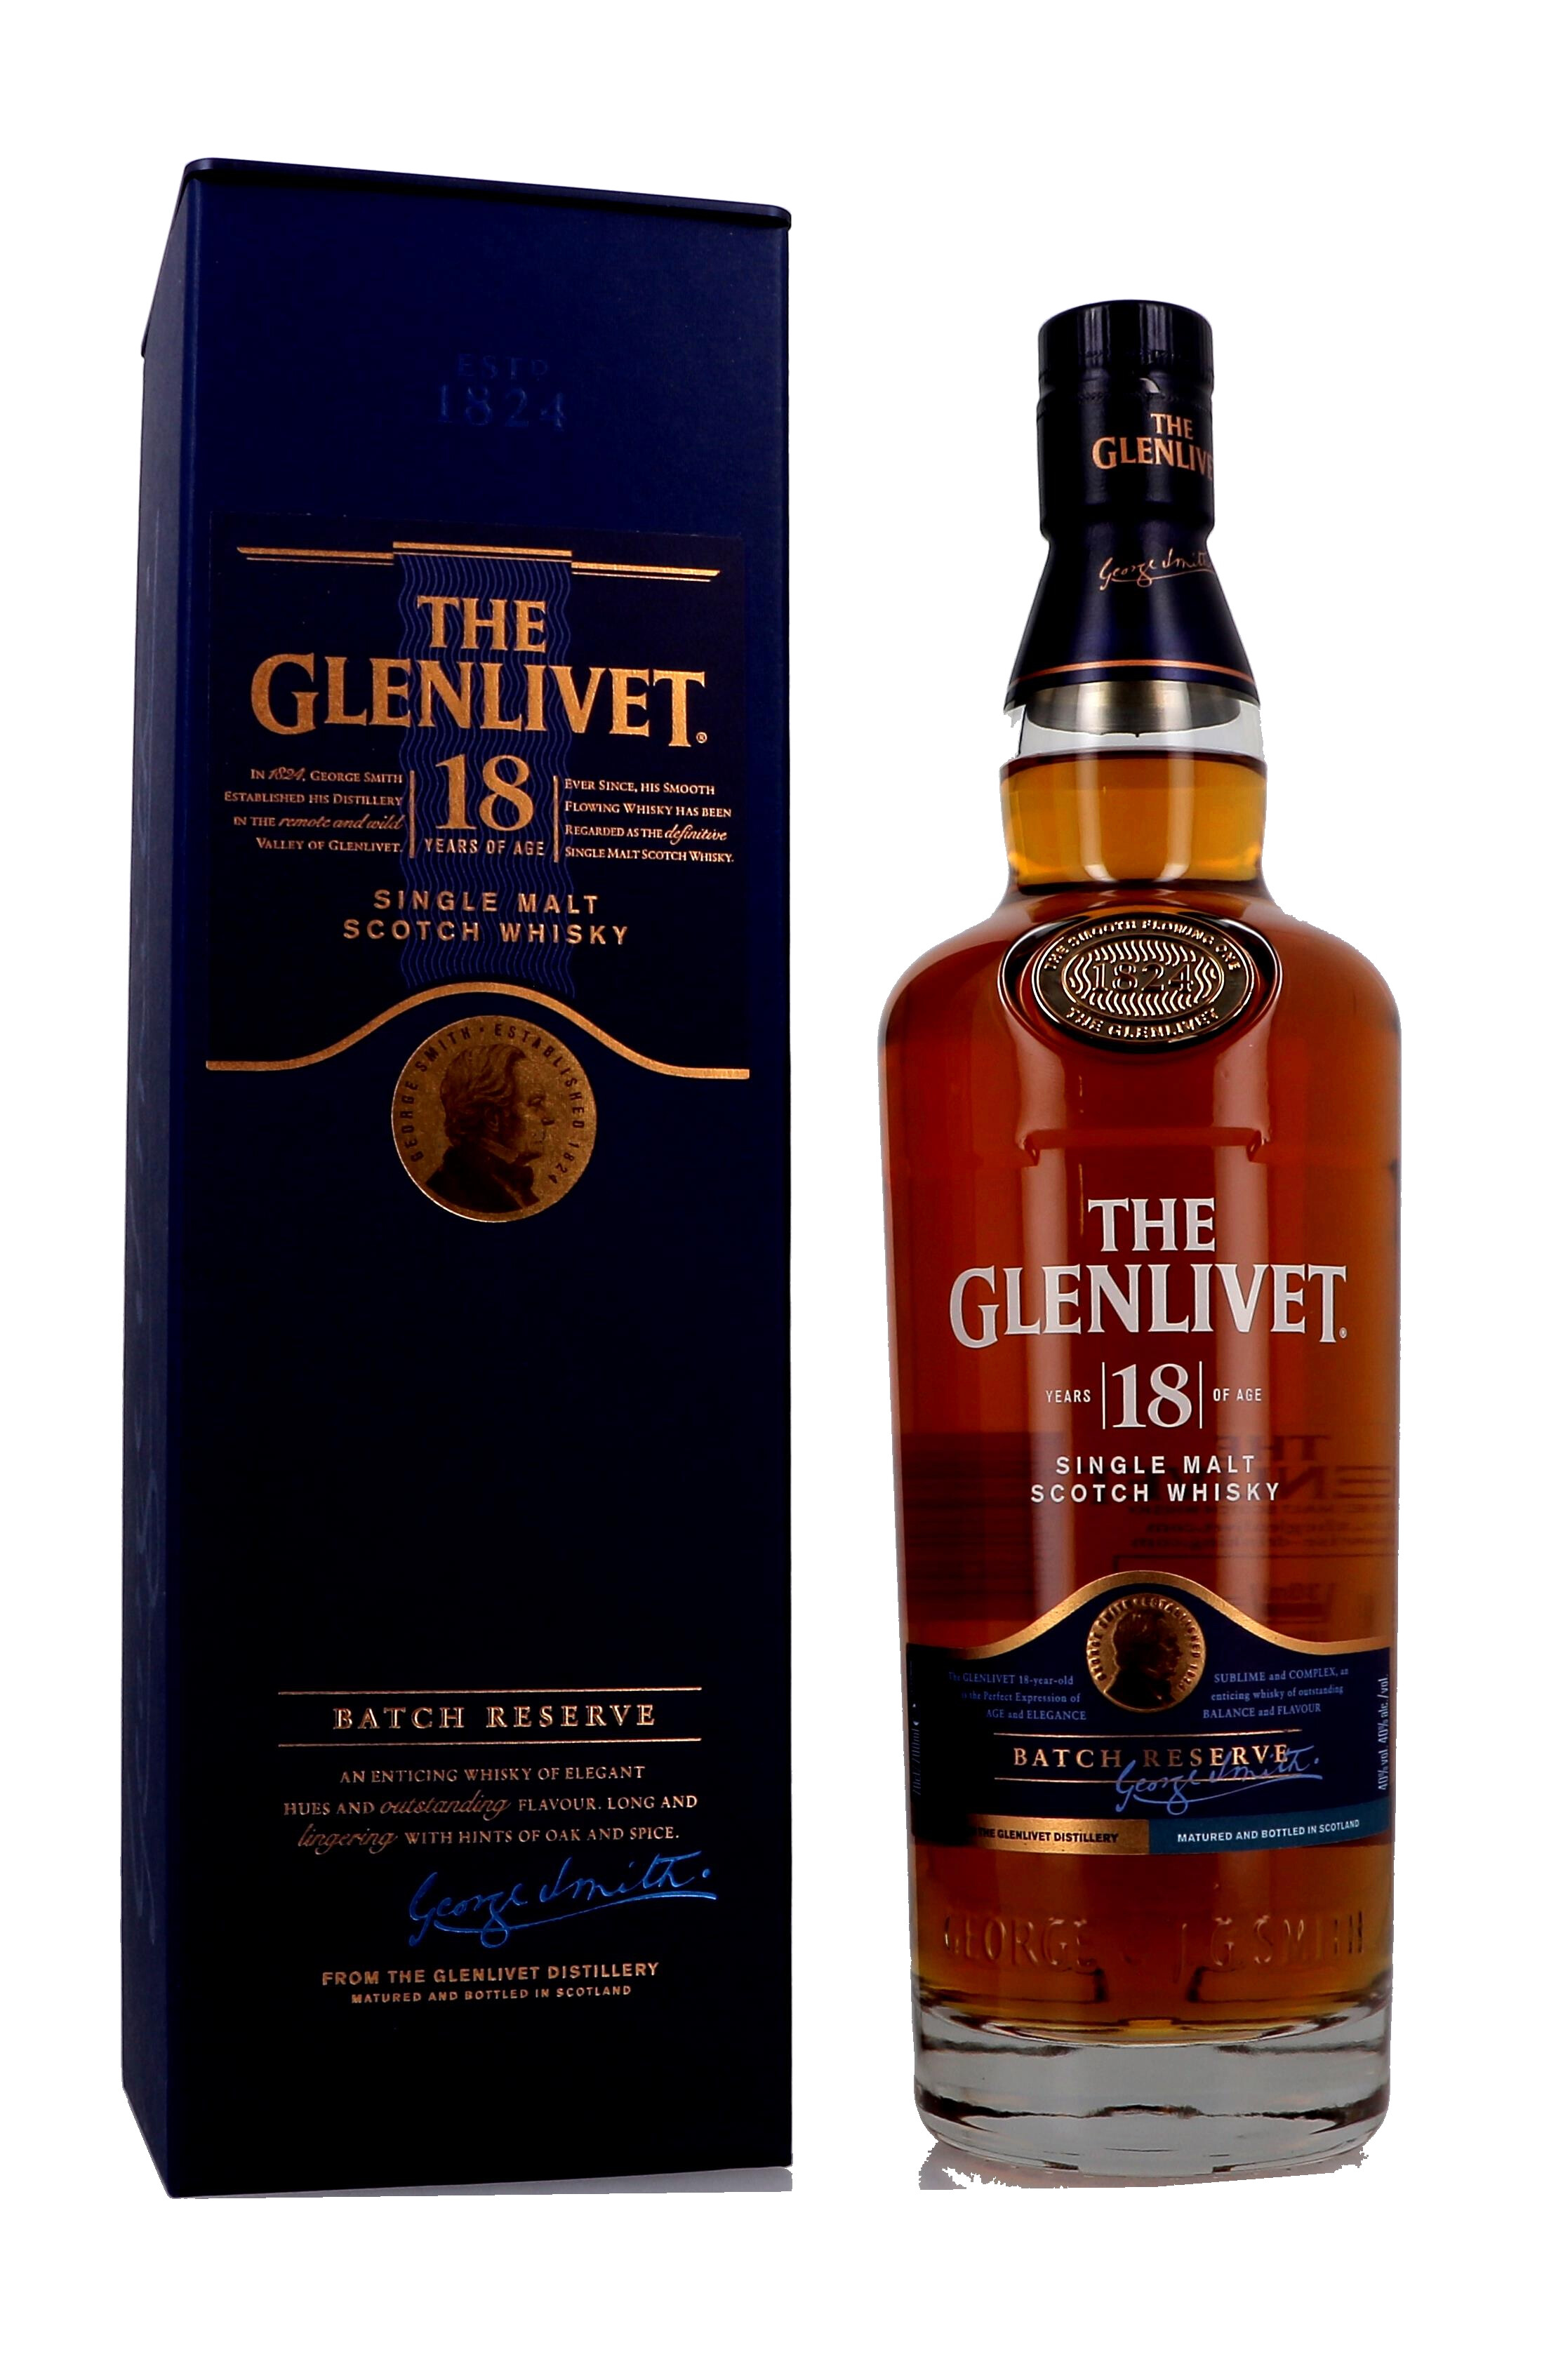 Whisky Malt Single Glenlivet Reserve Nevejan Batch The Speyside Scotch 40% Years 18 70cl -